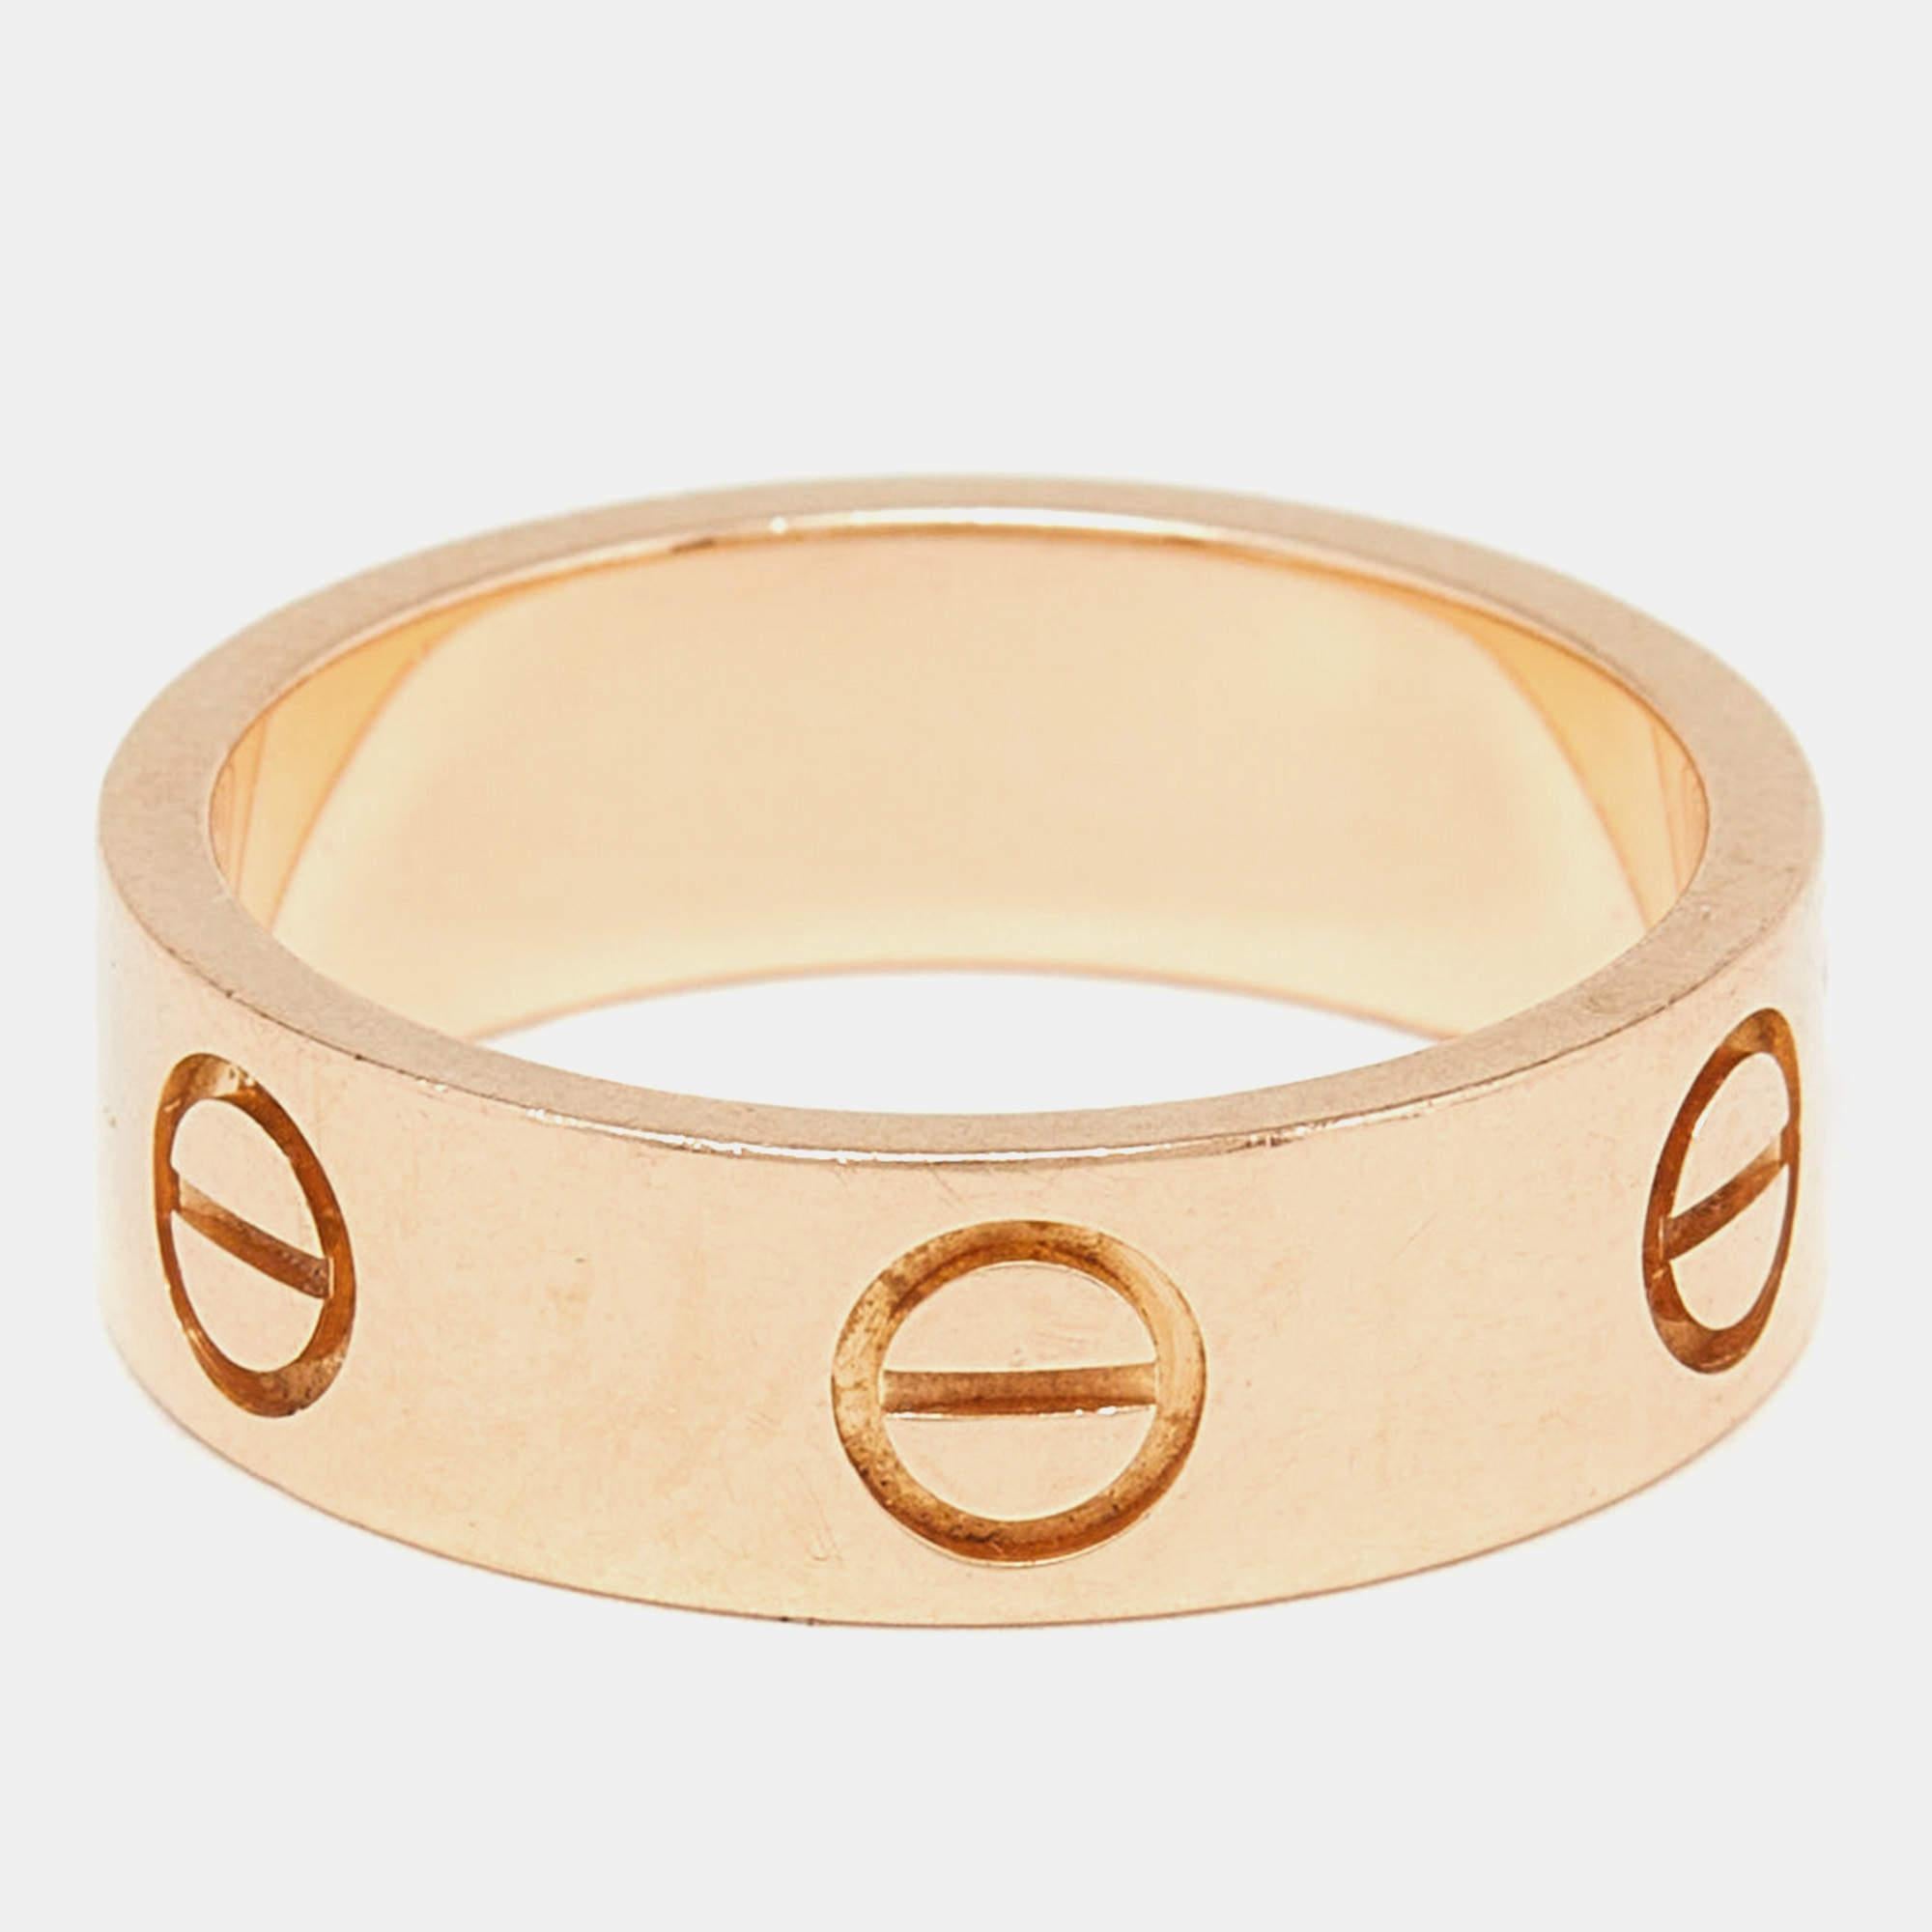 Erleben Sie den Inbegriff von Luxus und Handwerkskunst mit diesem authentischen Cartier Love Ring aus 18 Karat Gelbgold. Seine zeitlose Eleganz und seine außergewöhnlichen Details machen ihn zu einem Highlight für jede Gelegenheit.

Enthält: